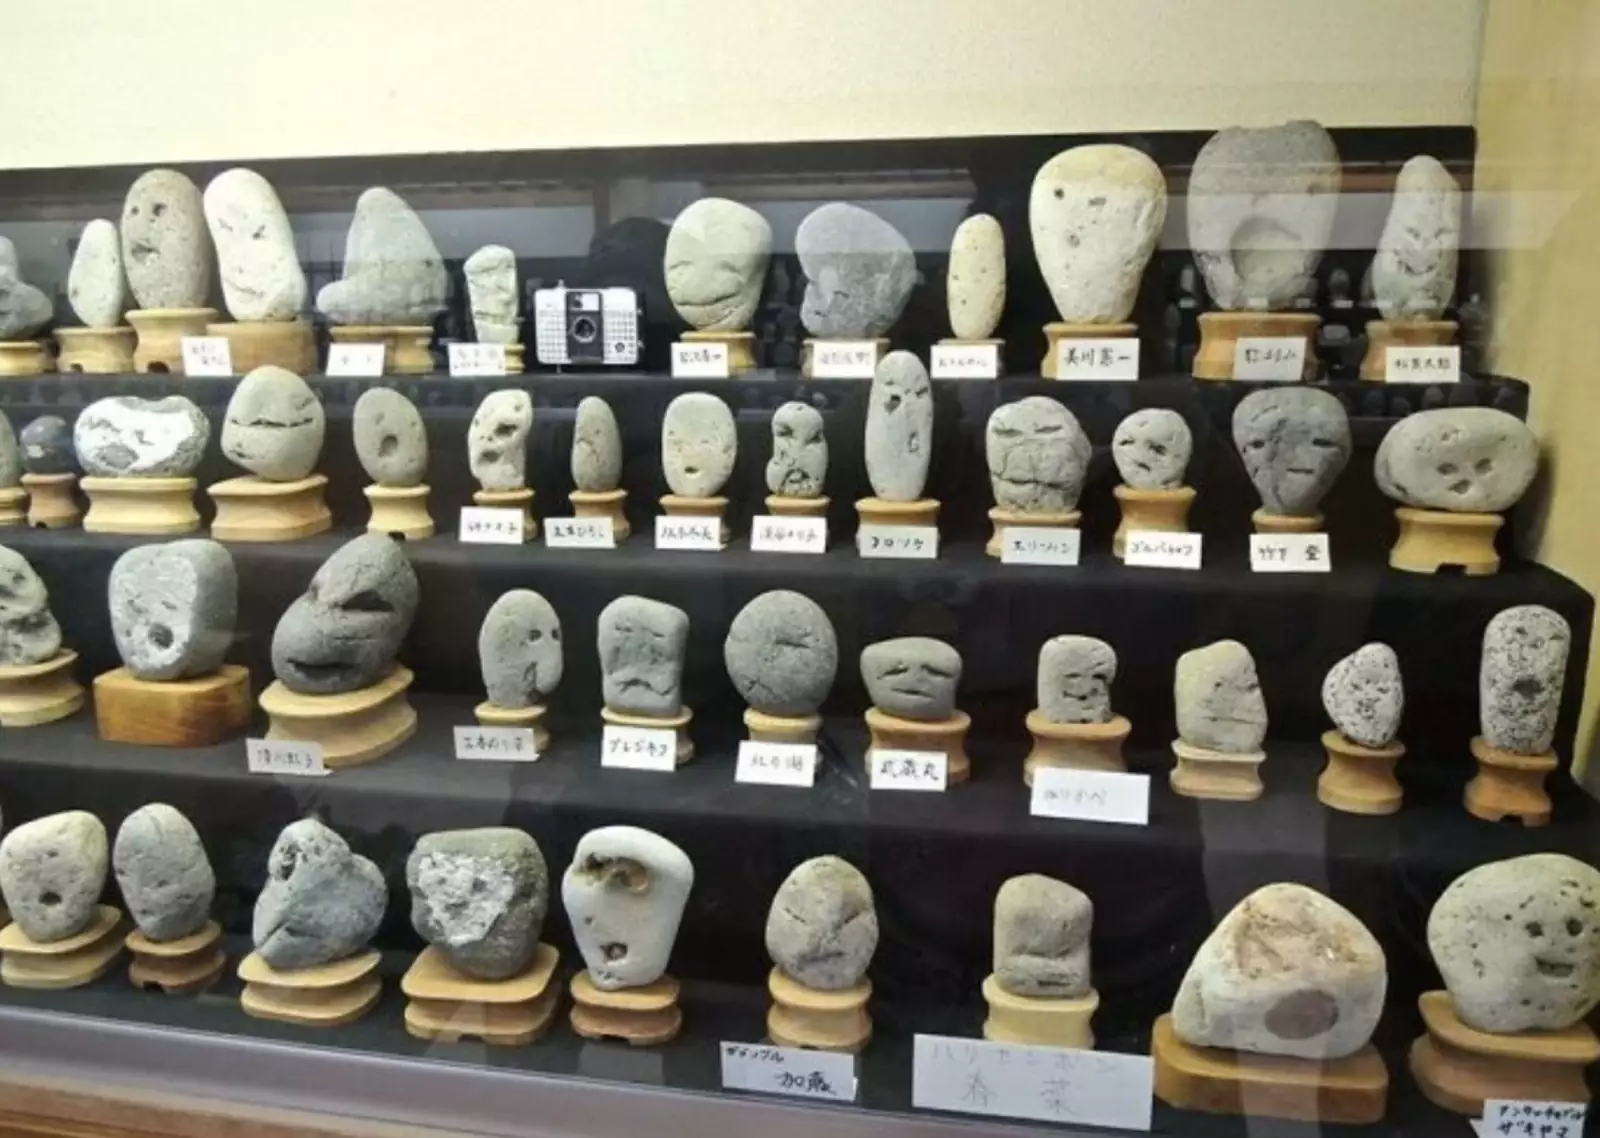  Фото из японского музея, в котором представлены природные камни уникальной формы со смайликами на них.